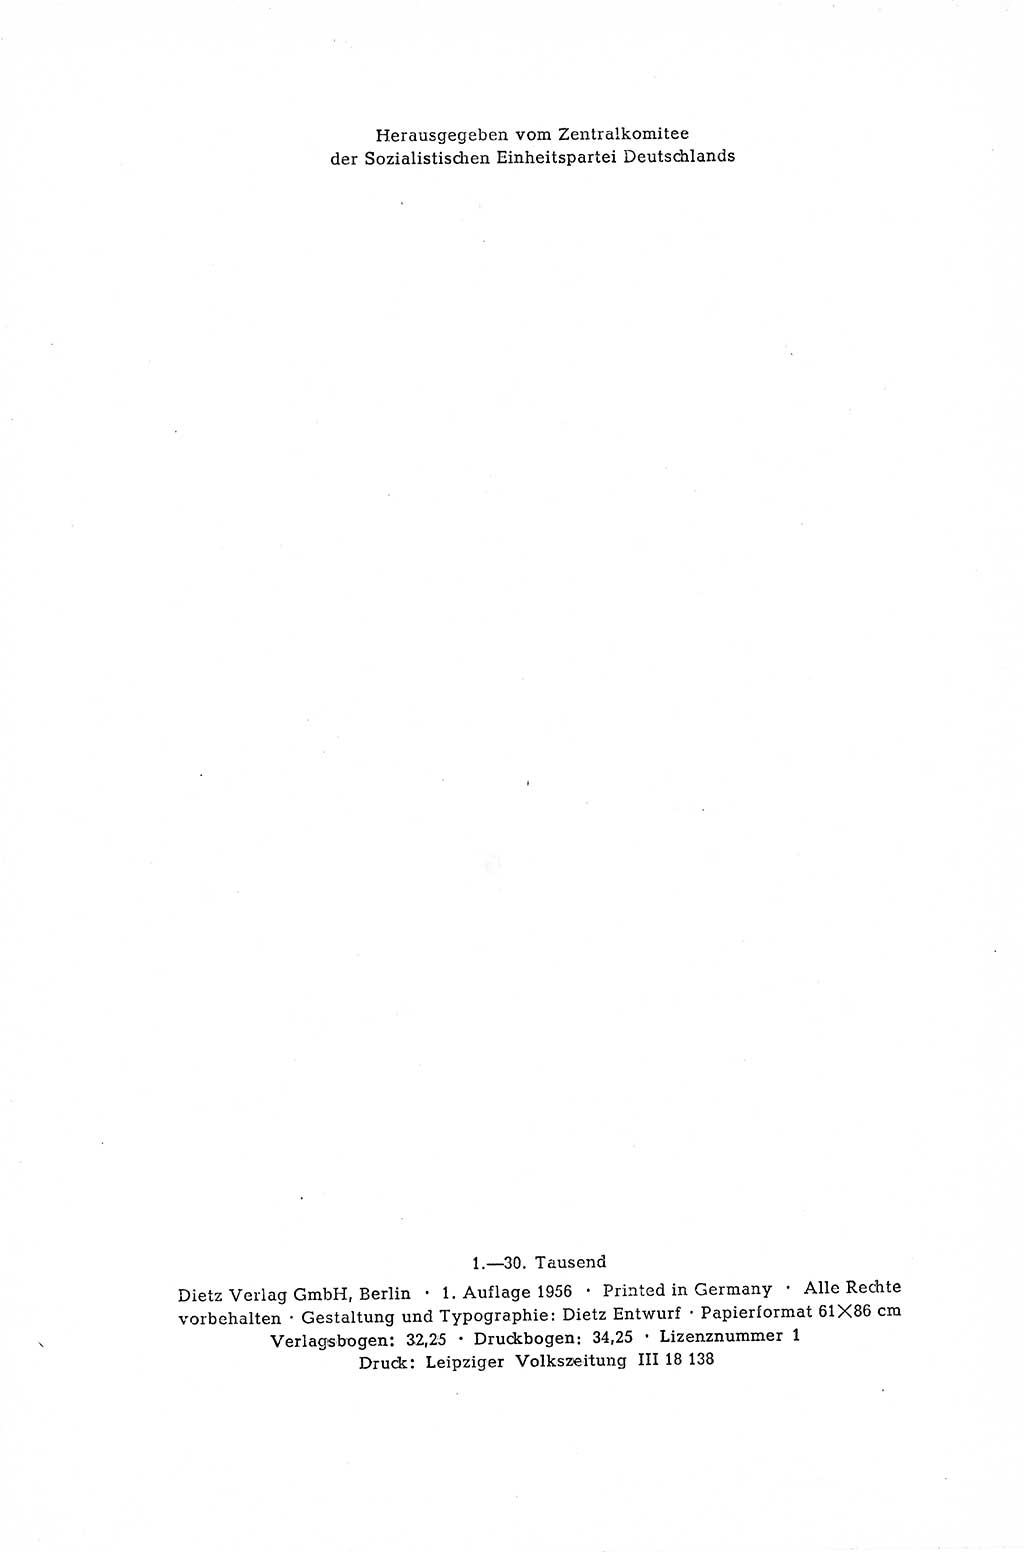 Dokumente der Sozialistischen Einheitspartei Deutschlands (SED) [Deutsche Demokratische Republik (DDR)] 1954-1955, Seite 4 (Dok. SED DDR 1954-1955, S. 4)